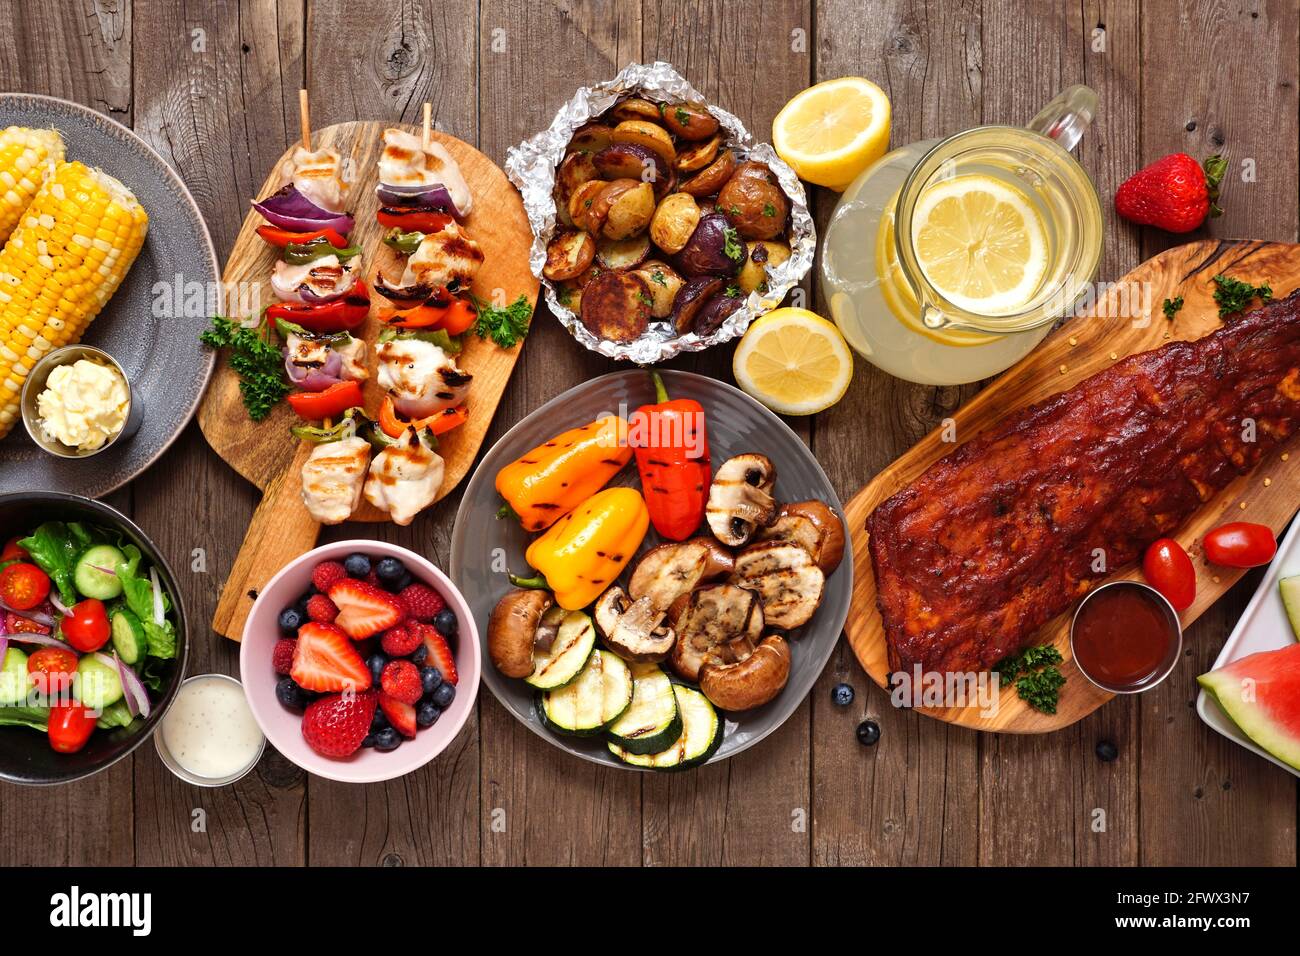 Sommer-BBQ oder Picknick-Tischszene. Auswahl an gegrilltem Fleisch, Gemüse, Obst, Salat und Kartoffeln. Draufsicht über einen dunklen Holzhintergrund. Stockfoto